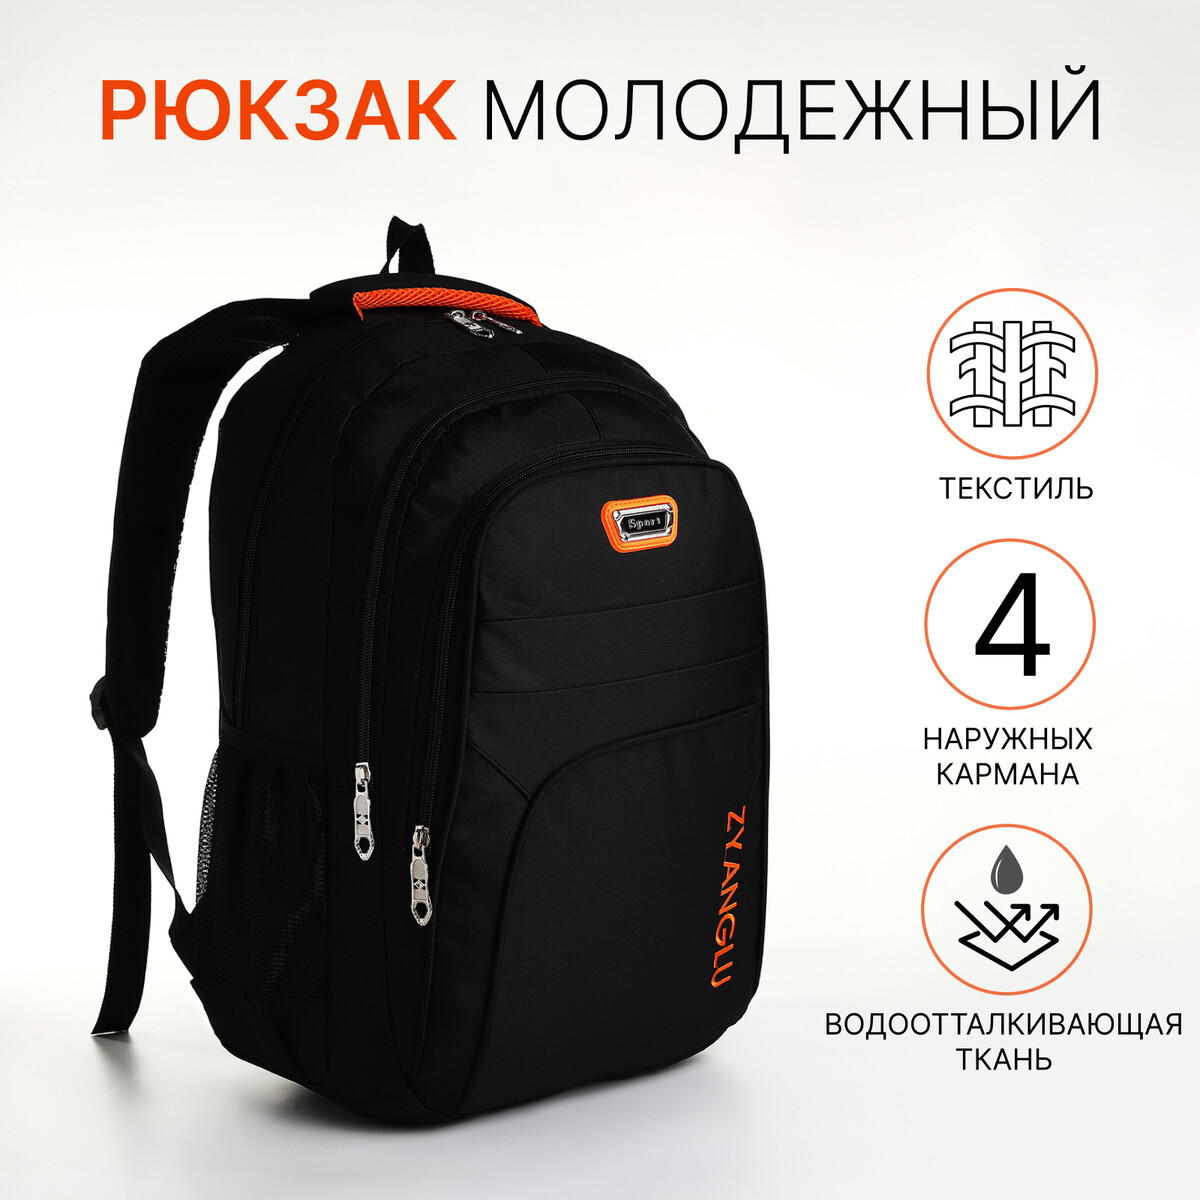 Рюкзак молодежный на молнии, 4 кармана, цвет черный/оранжевый рюкзак молодежный из текстиля 2 отдела на молнии 3 кармана оранжевый